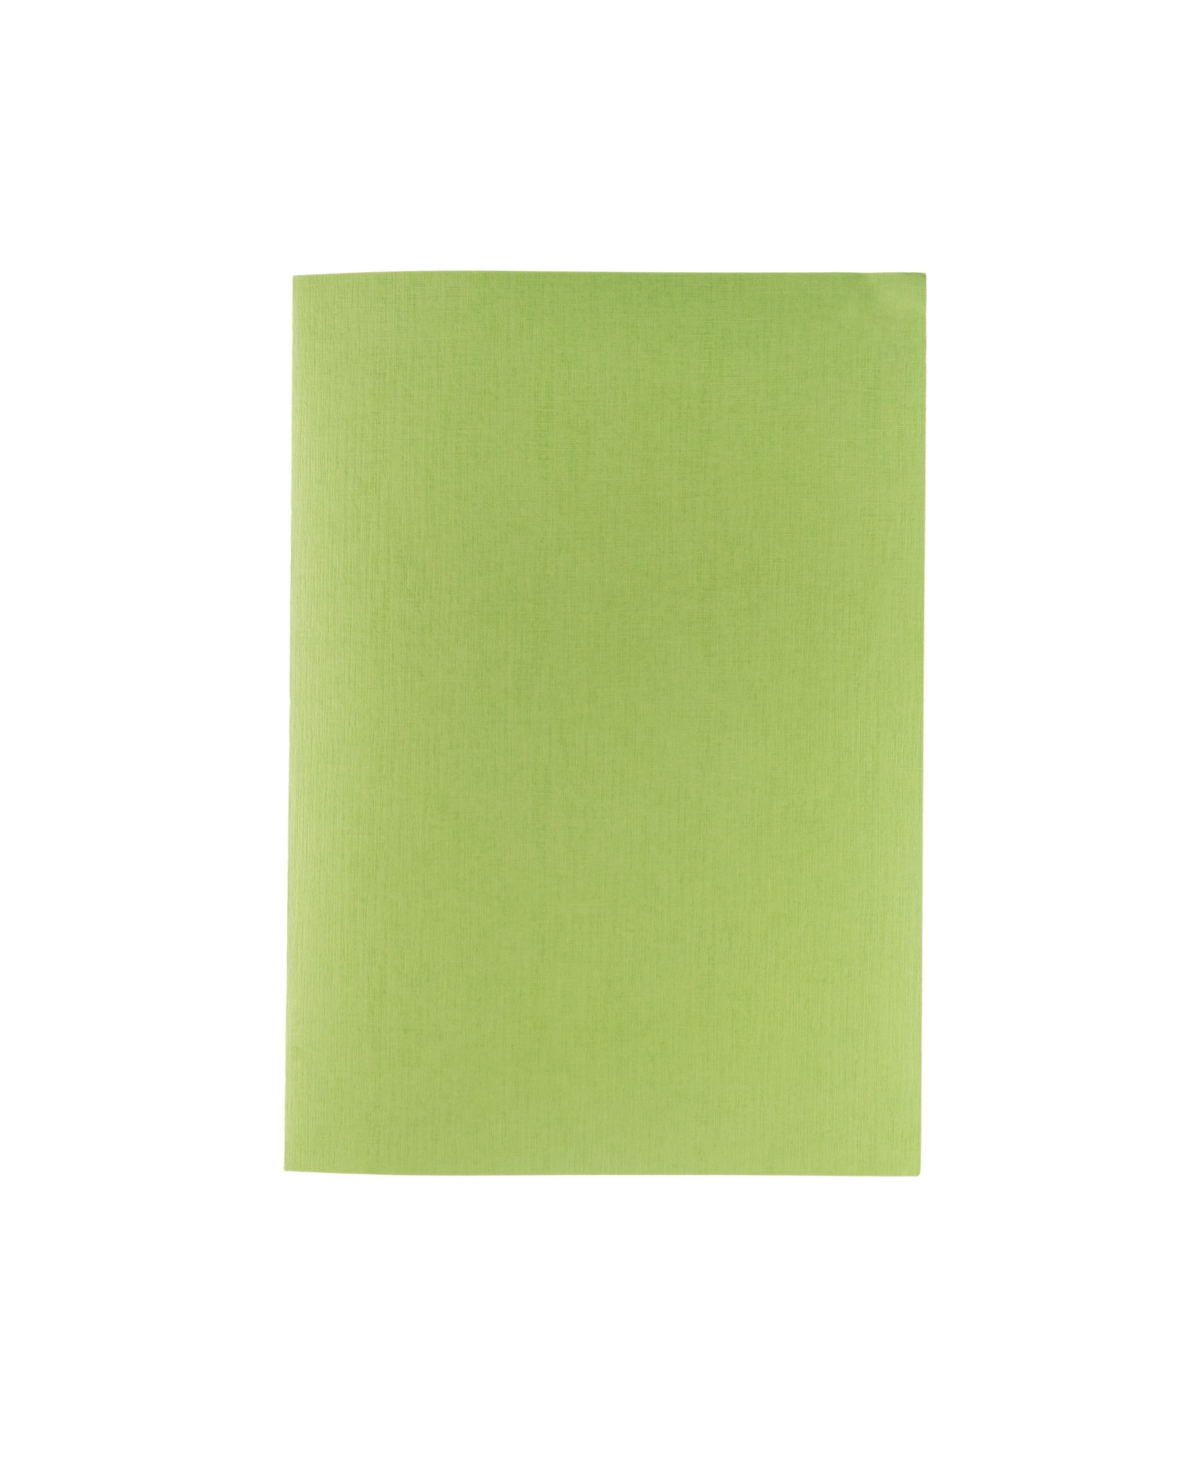 Ecoqua Plus Glue Bound Dotted A4 Notebook, 8.3" x 11.7" - Green